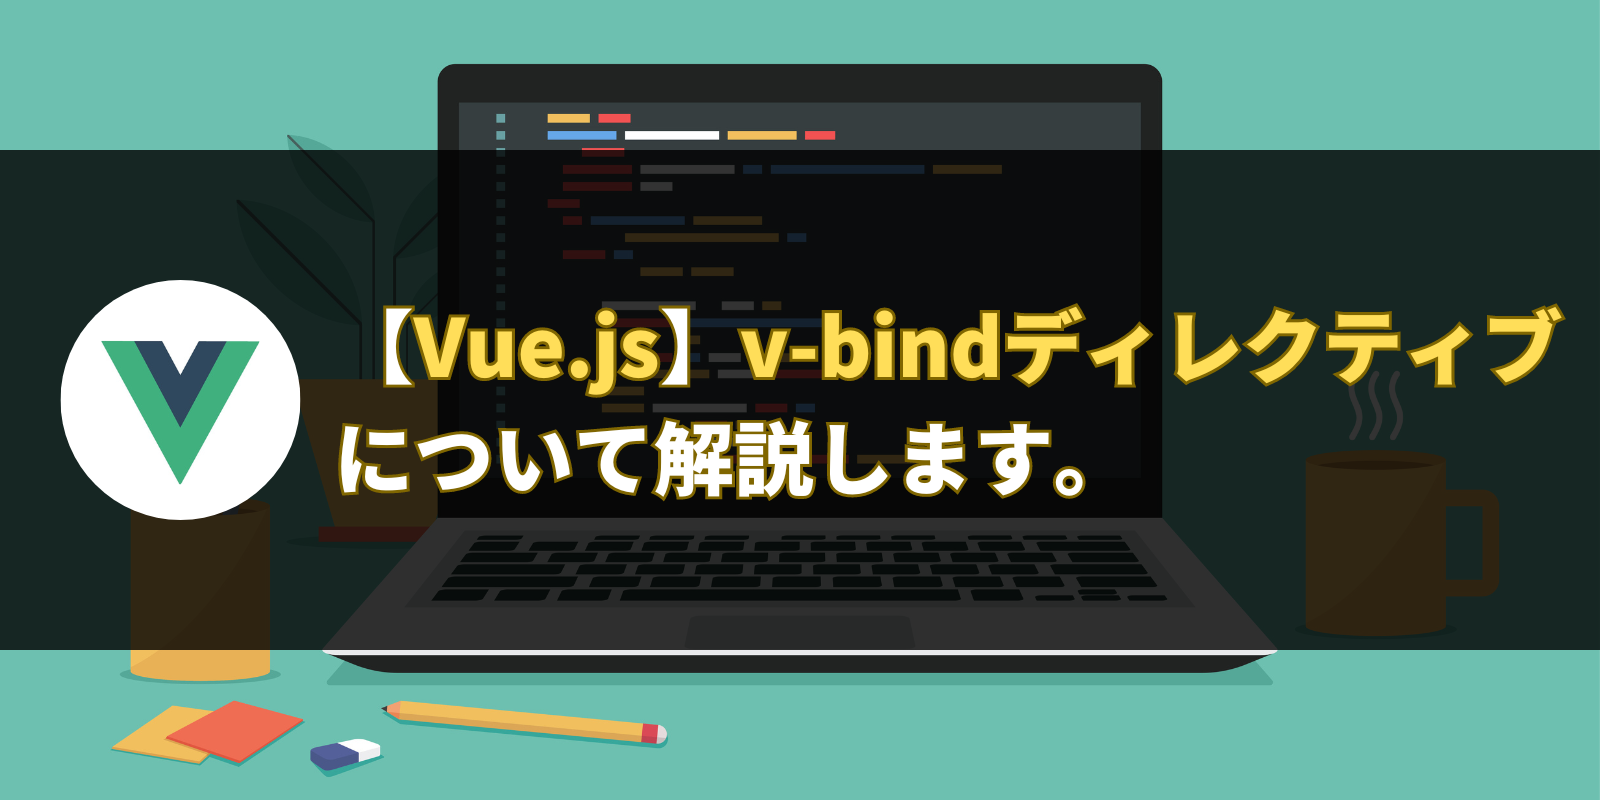 【Vue.js】v-bindディレクティブについて解説します。